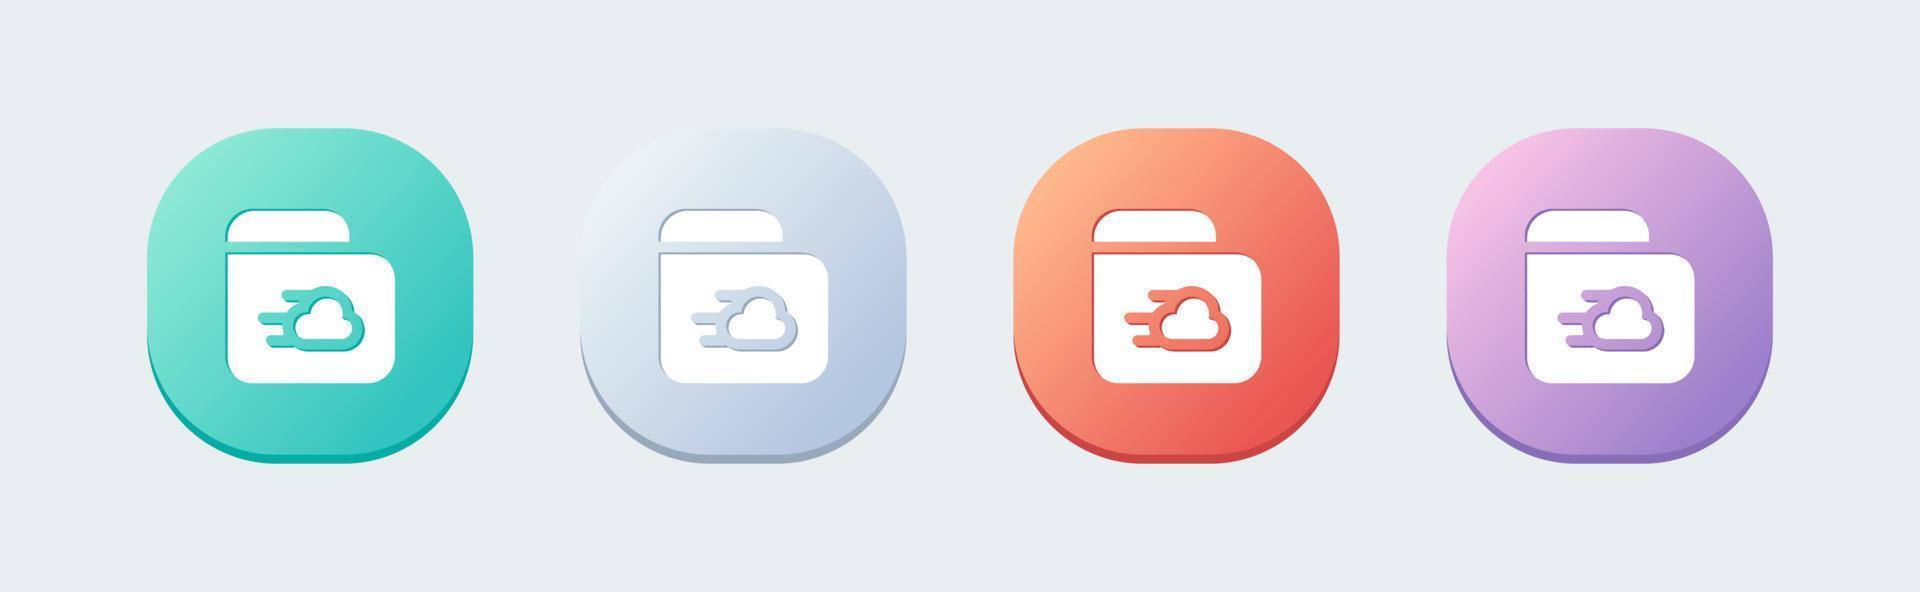 icône solide de stockage en nuage dans un style design plat. illustration vectorielle de signes de base de données réseau. vecteur